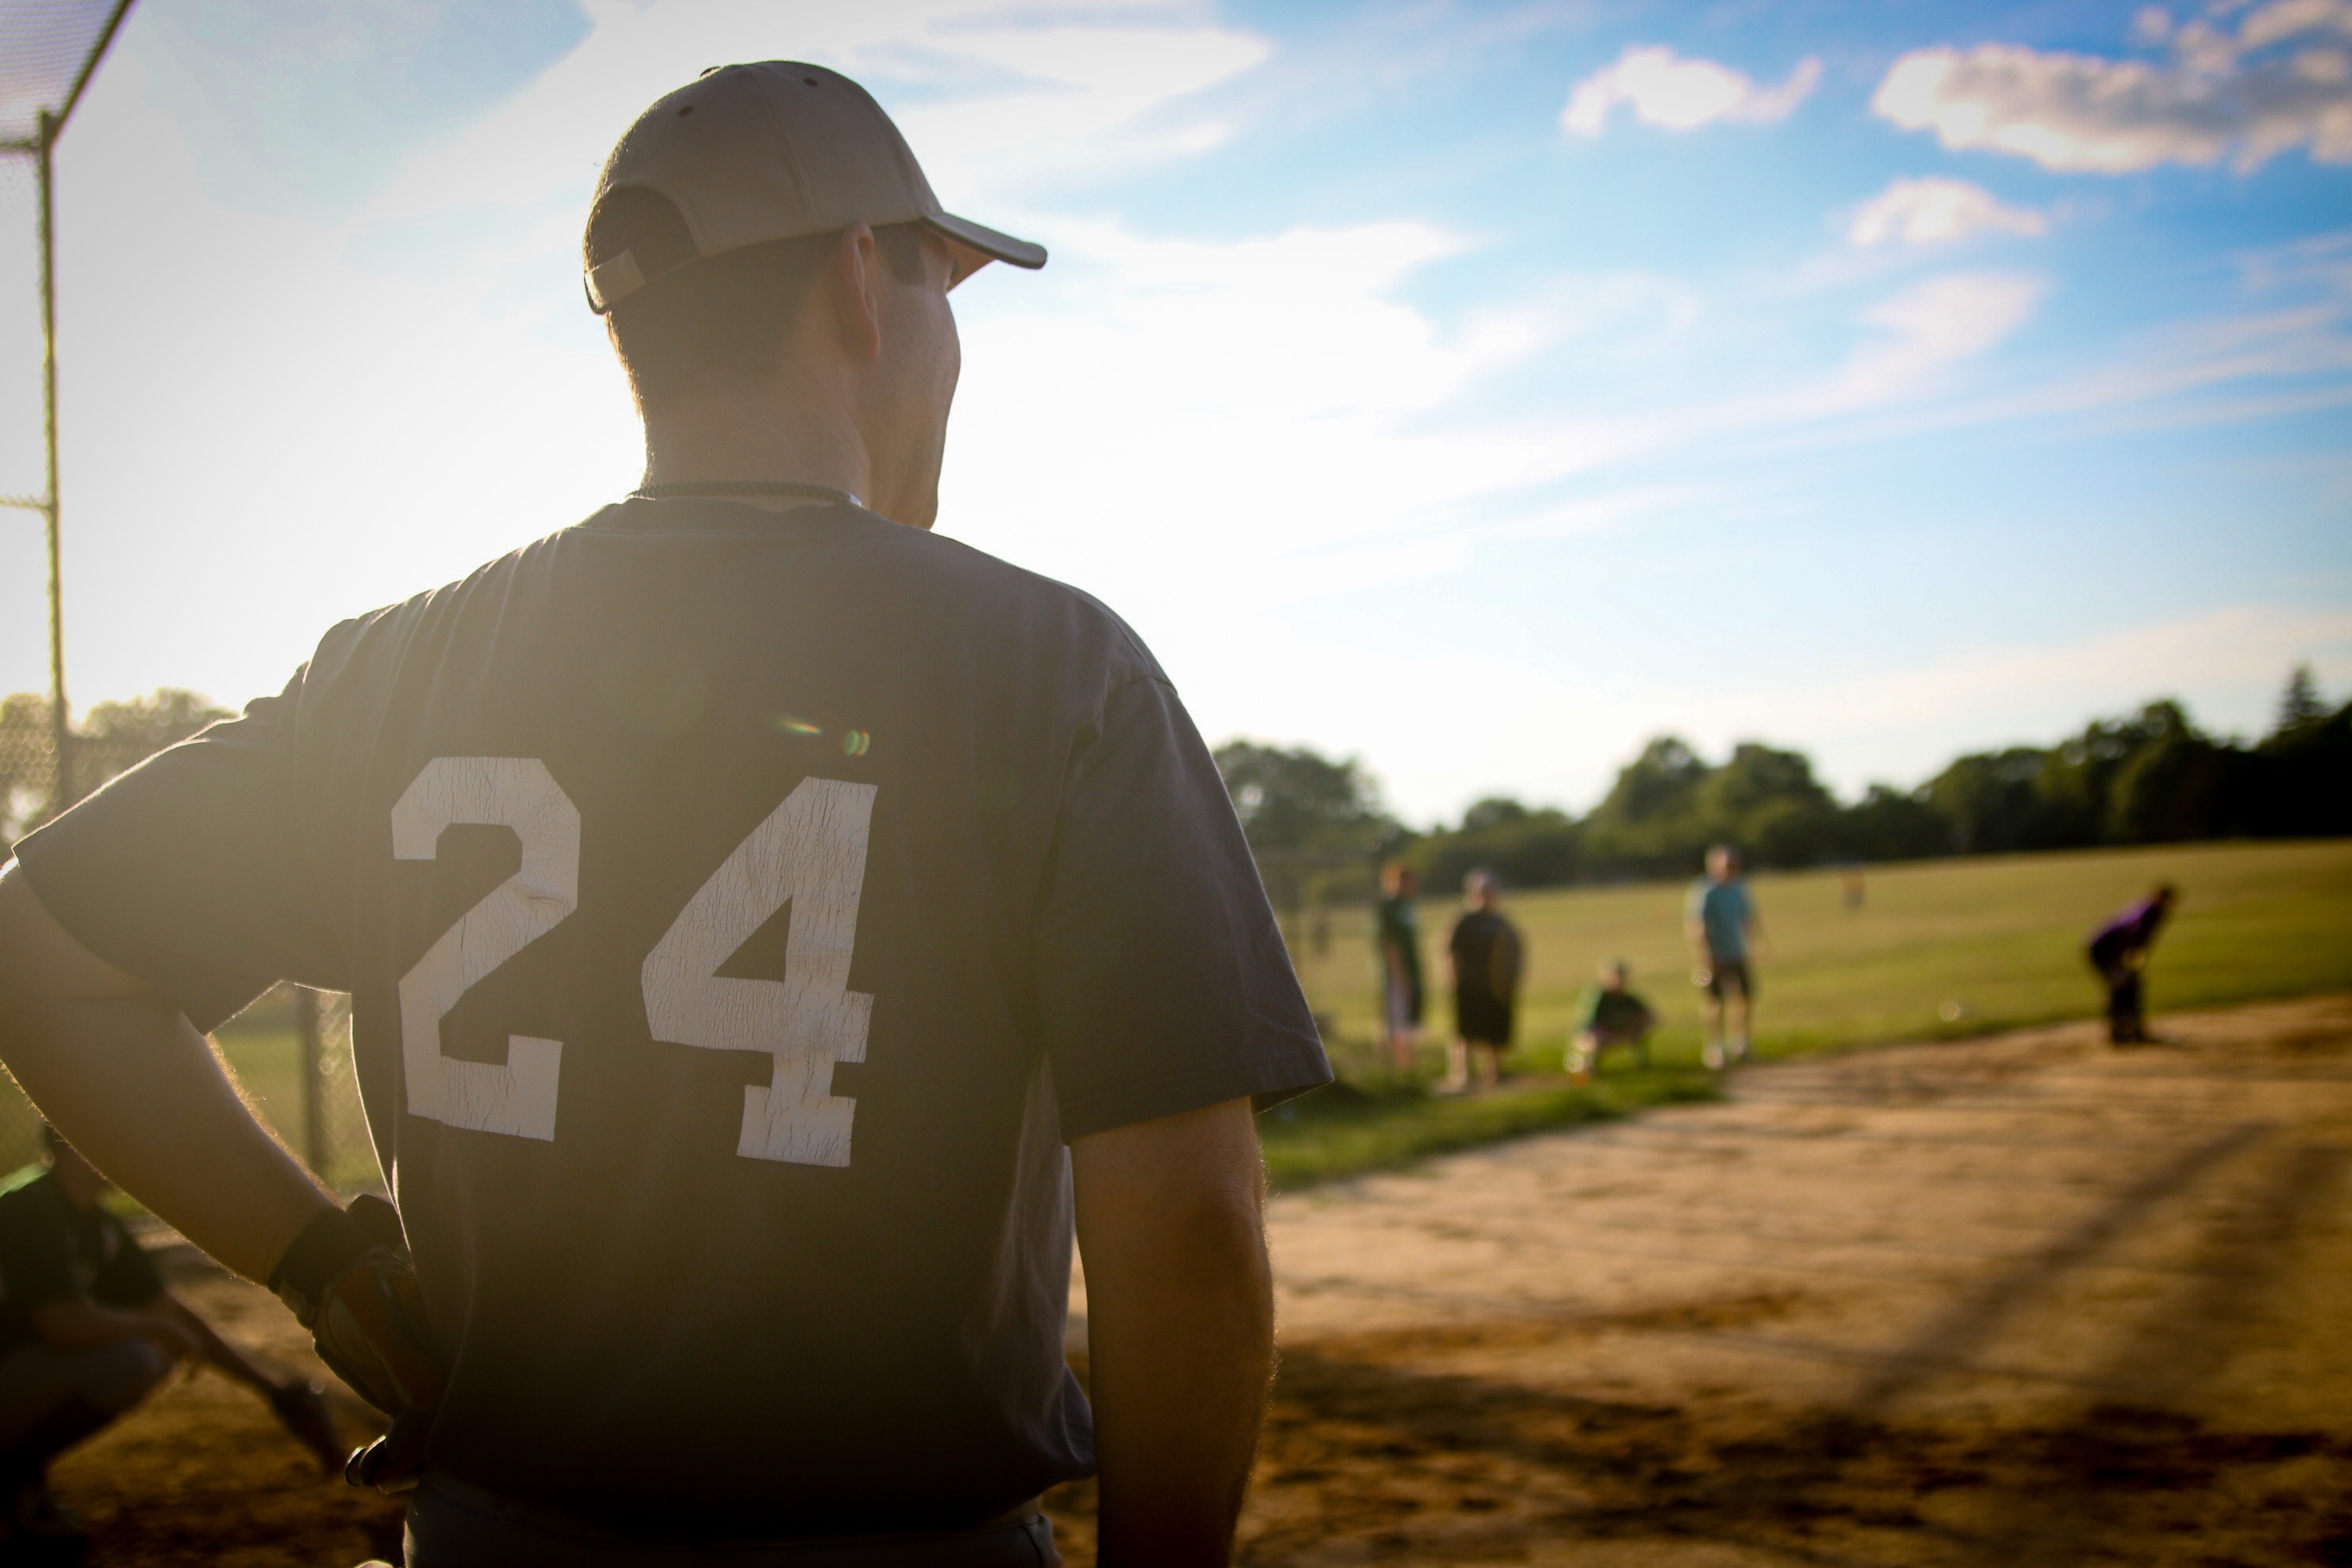 man wearing black 24 jersey shirt playing baseball